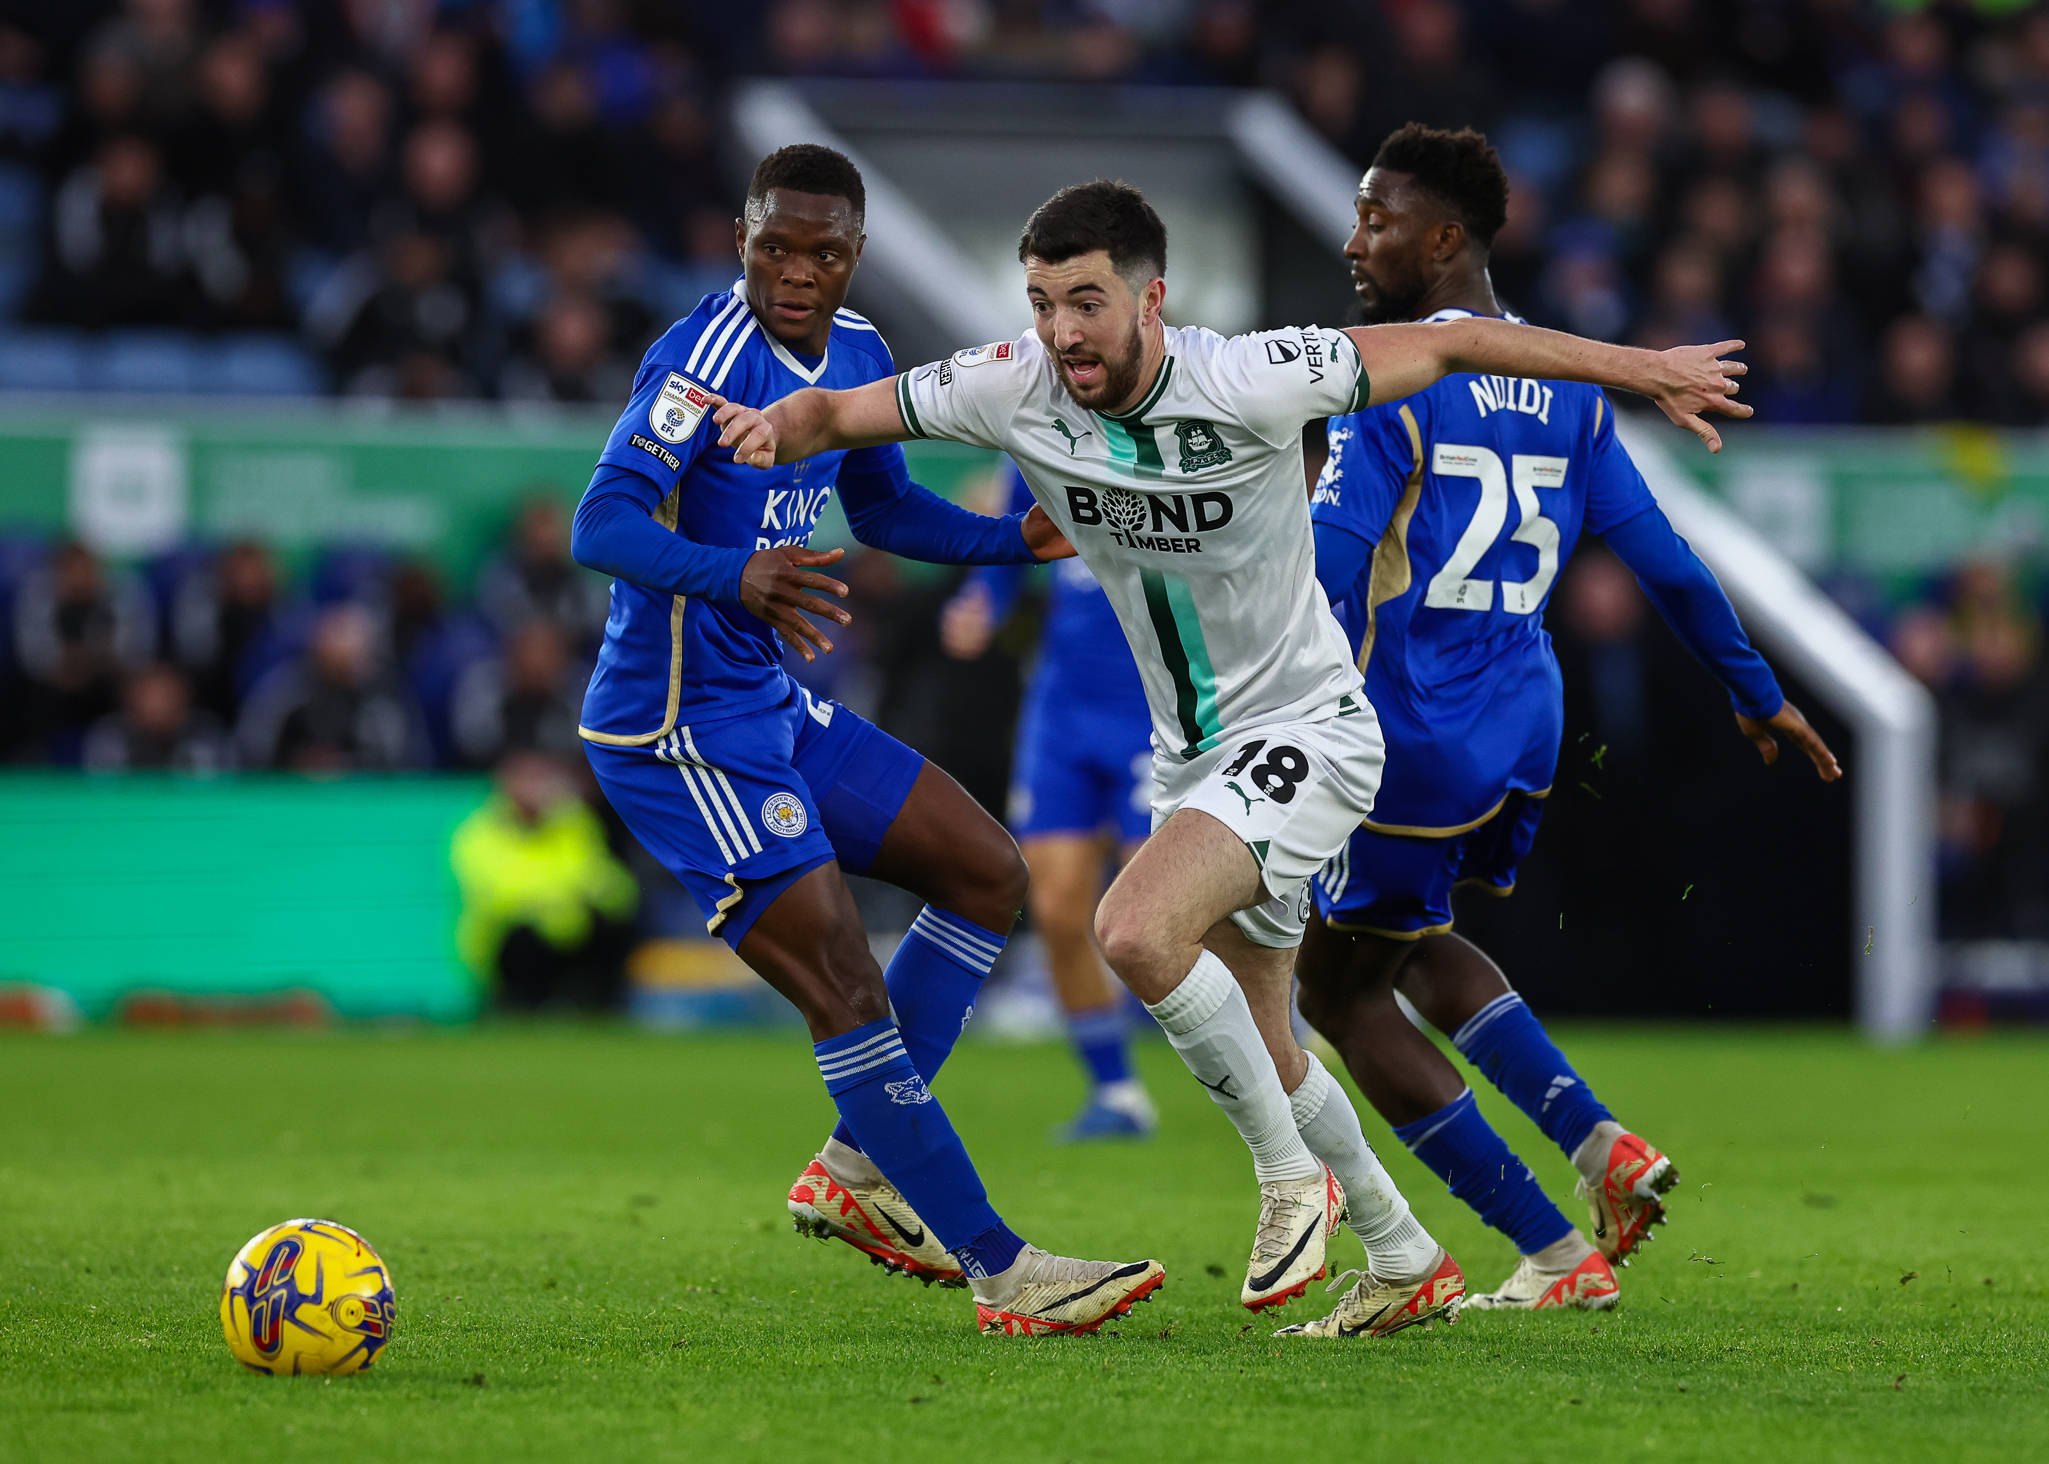 Finn Azaz drives the ball forward against Leicester City